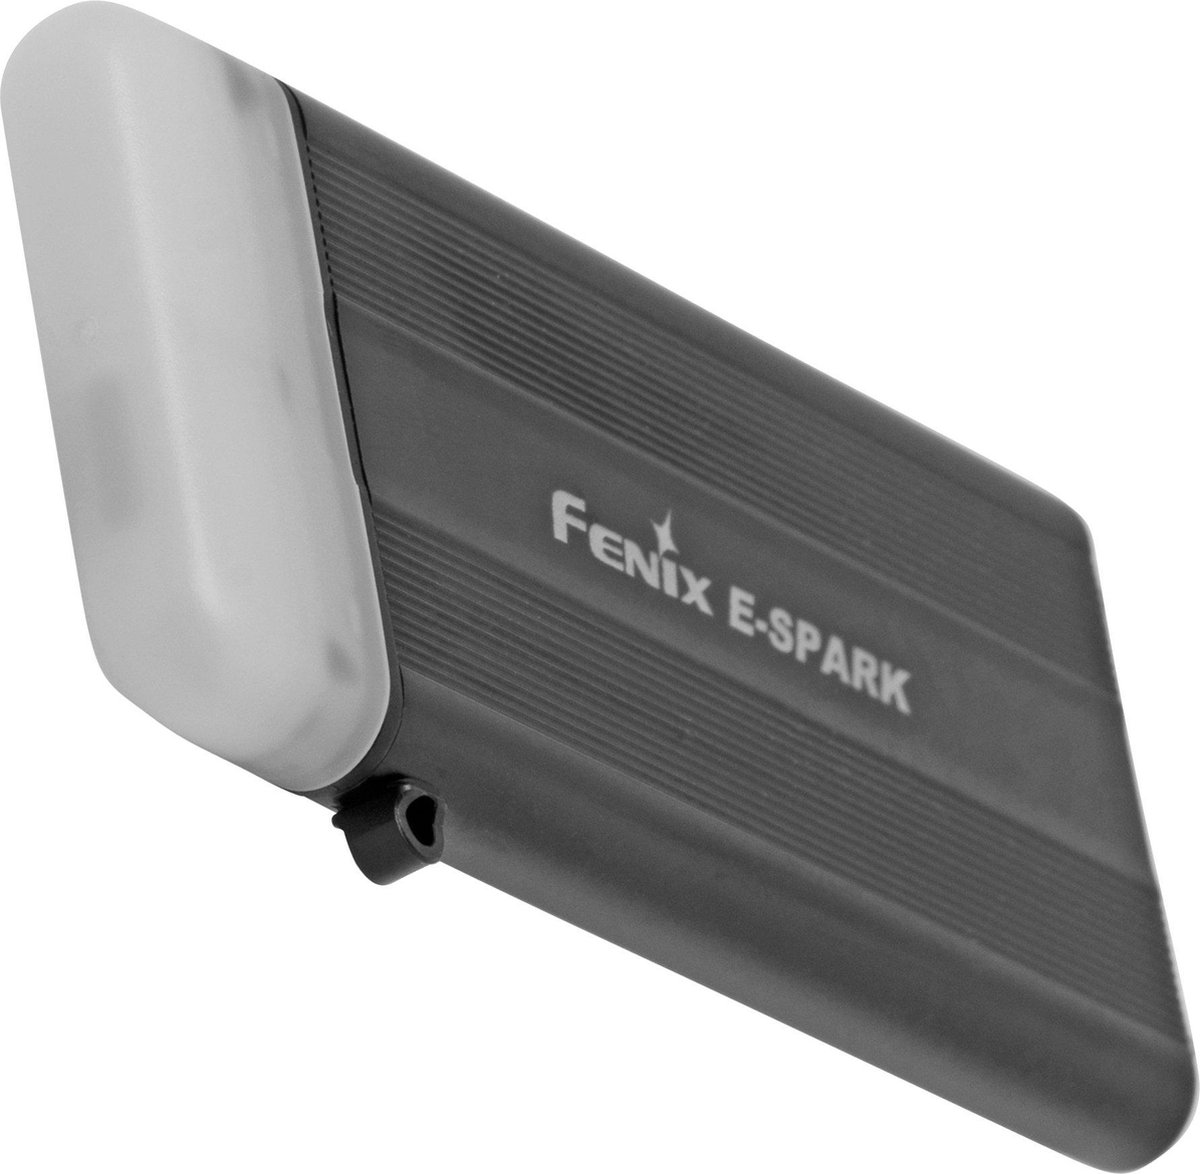 Fenix E-SPARK Zaklamp FEE-SPARK Sleutelhanger Zaklamp, 100 Lumen, Aluminium